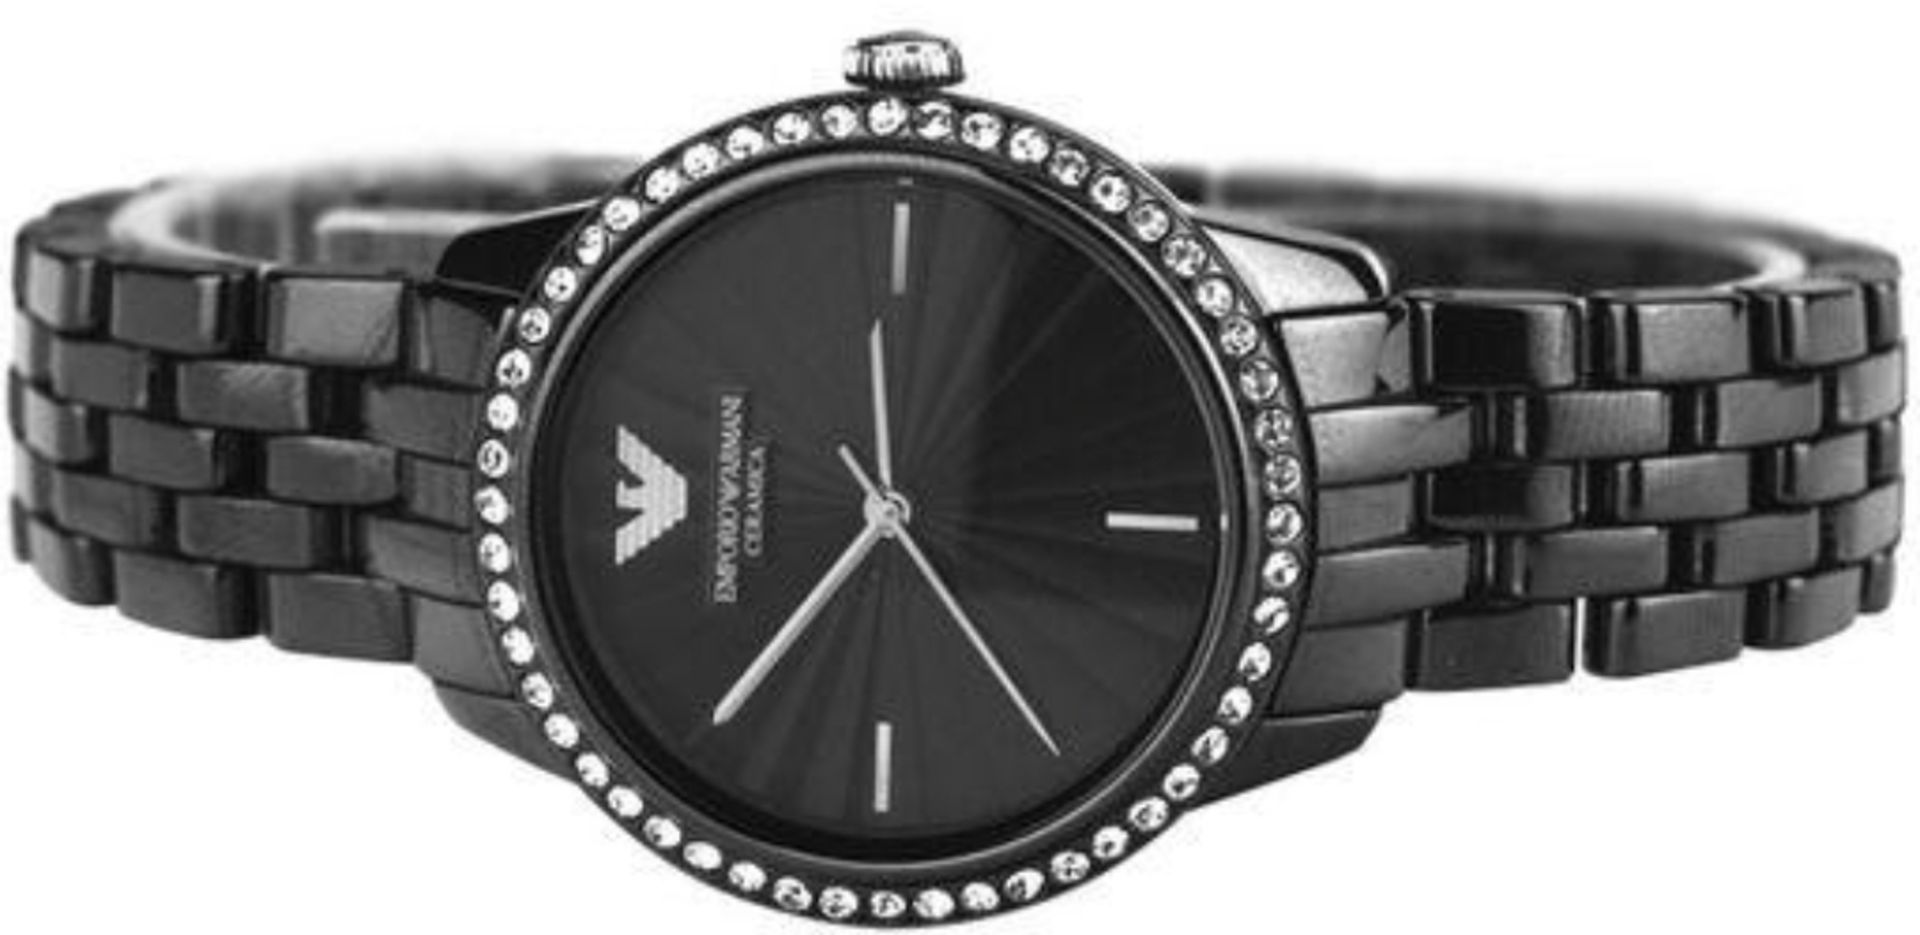 Emporio Armani AR1478 Ladies Black Ceramica Quartz Watch - Image 8 of 9